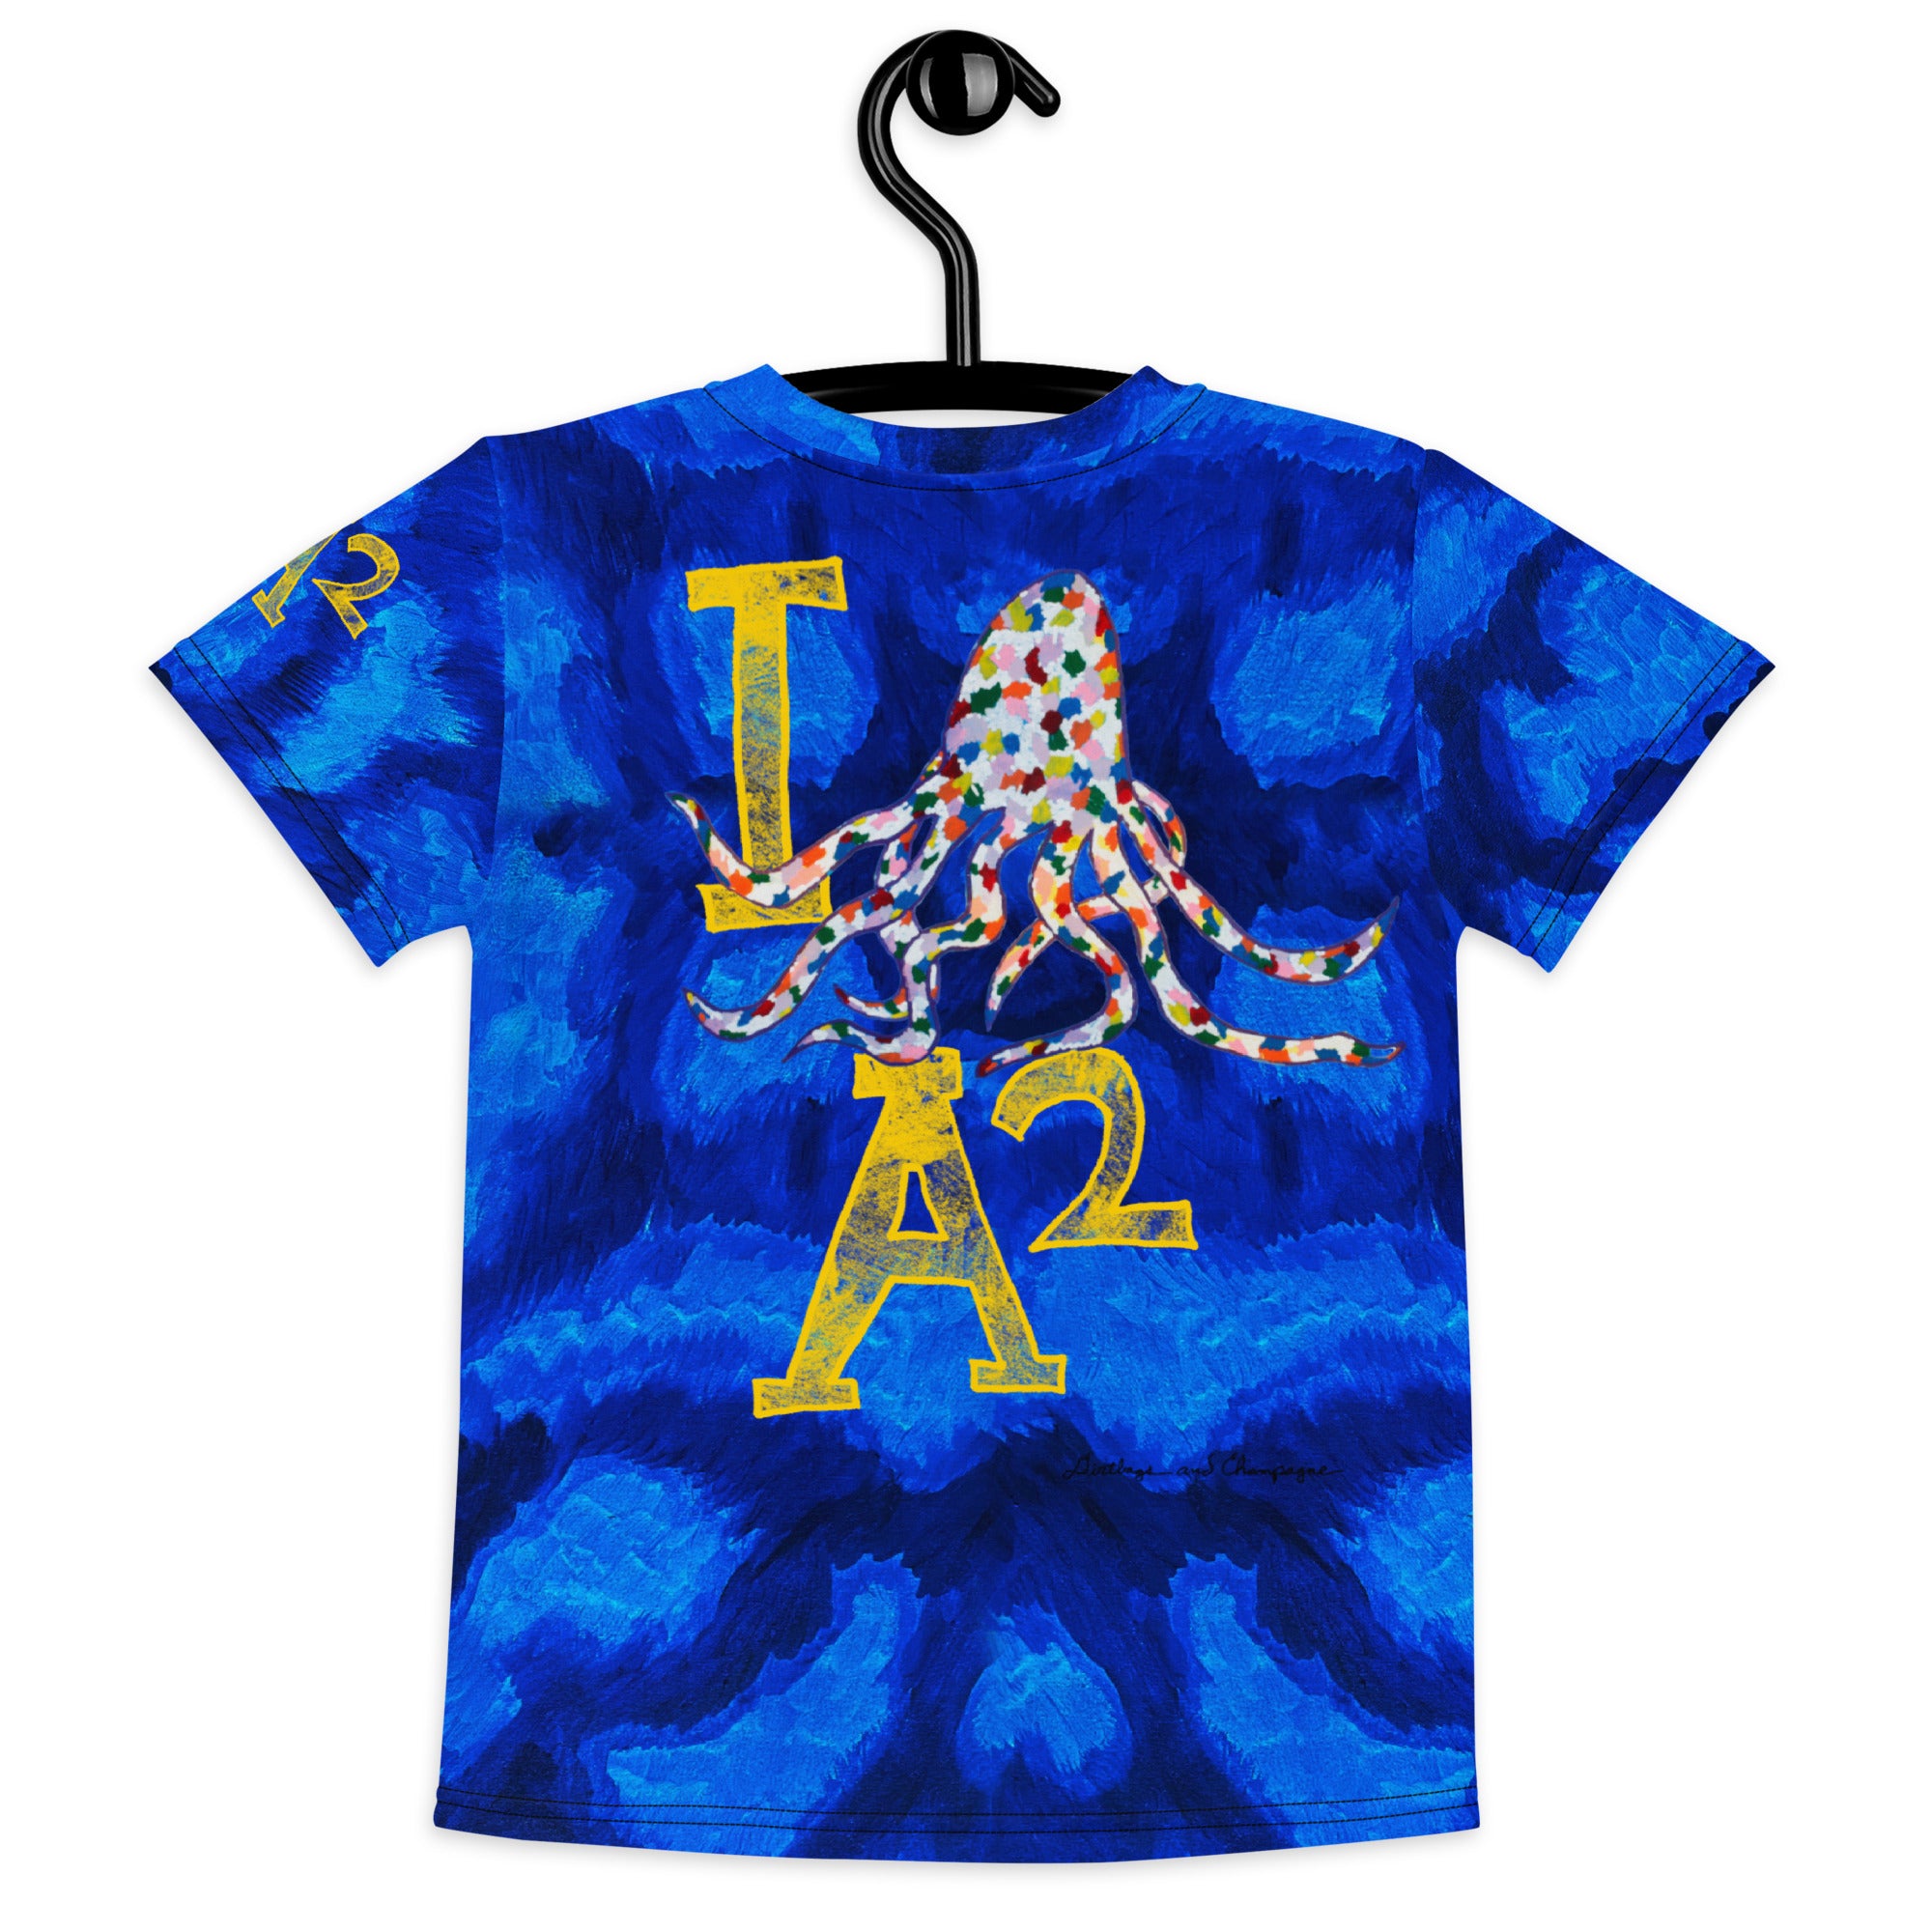 I Octopus A2 little Kids crew neck t-shirt